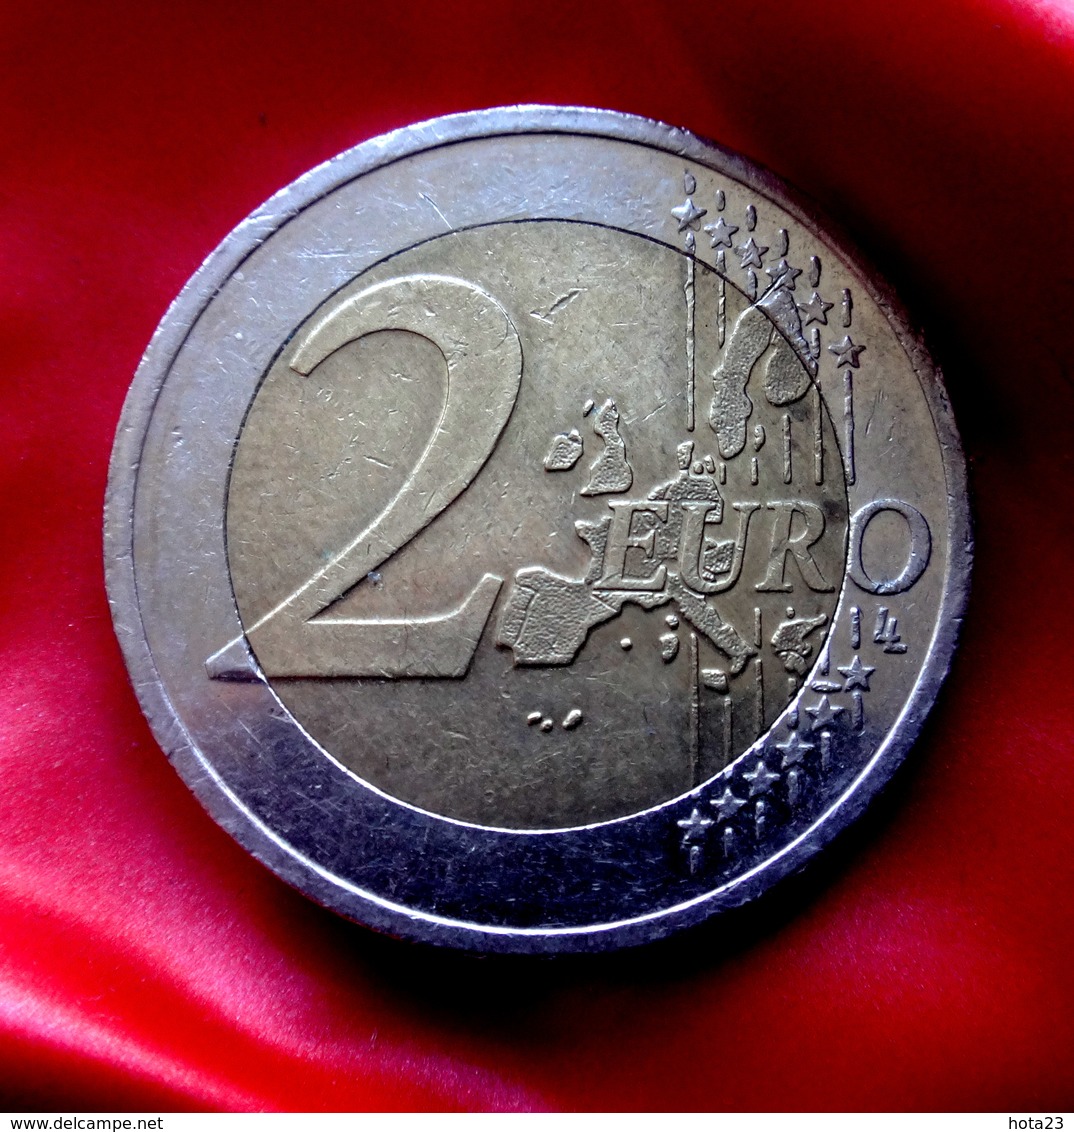 ITALIA 2015 2 EURO  EXPO MILANO - NUTRIRE IL MONDO Coin  CIRCULATED - Italie